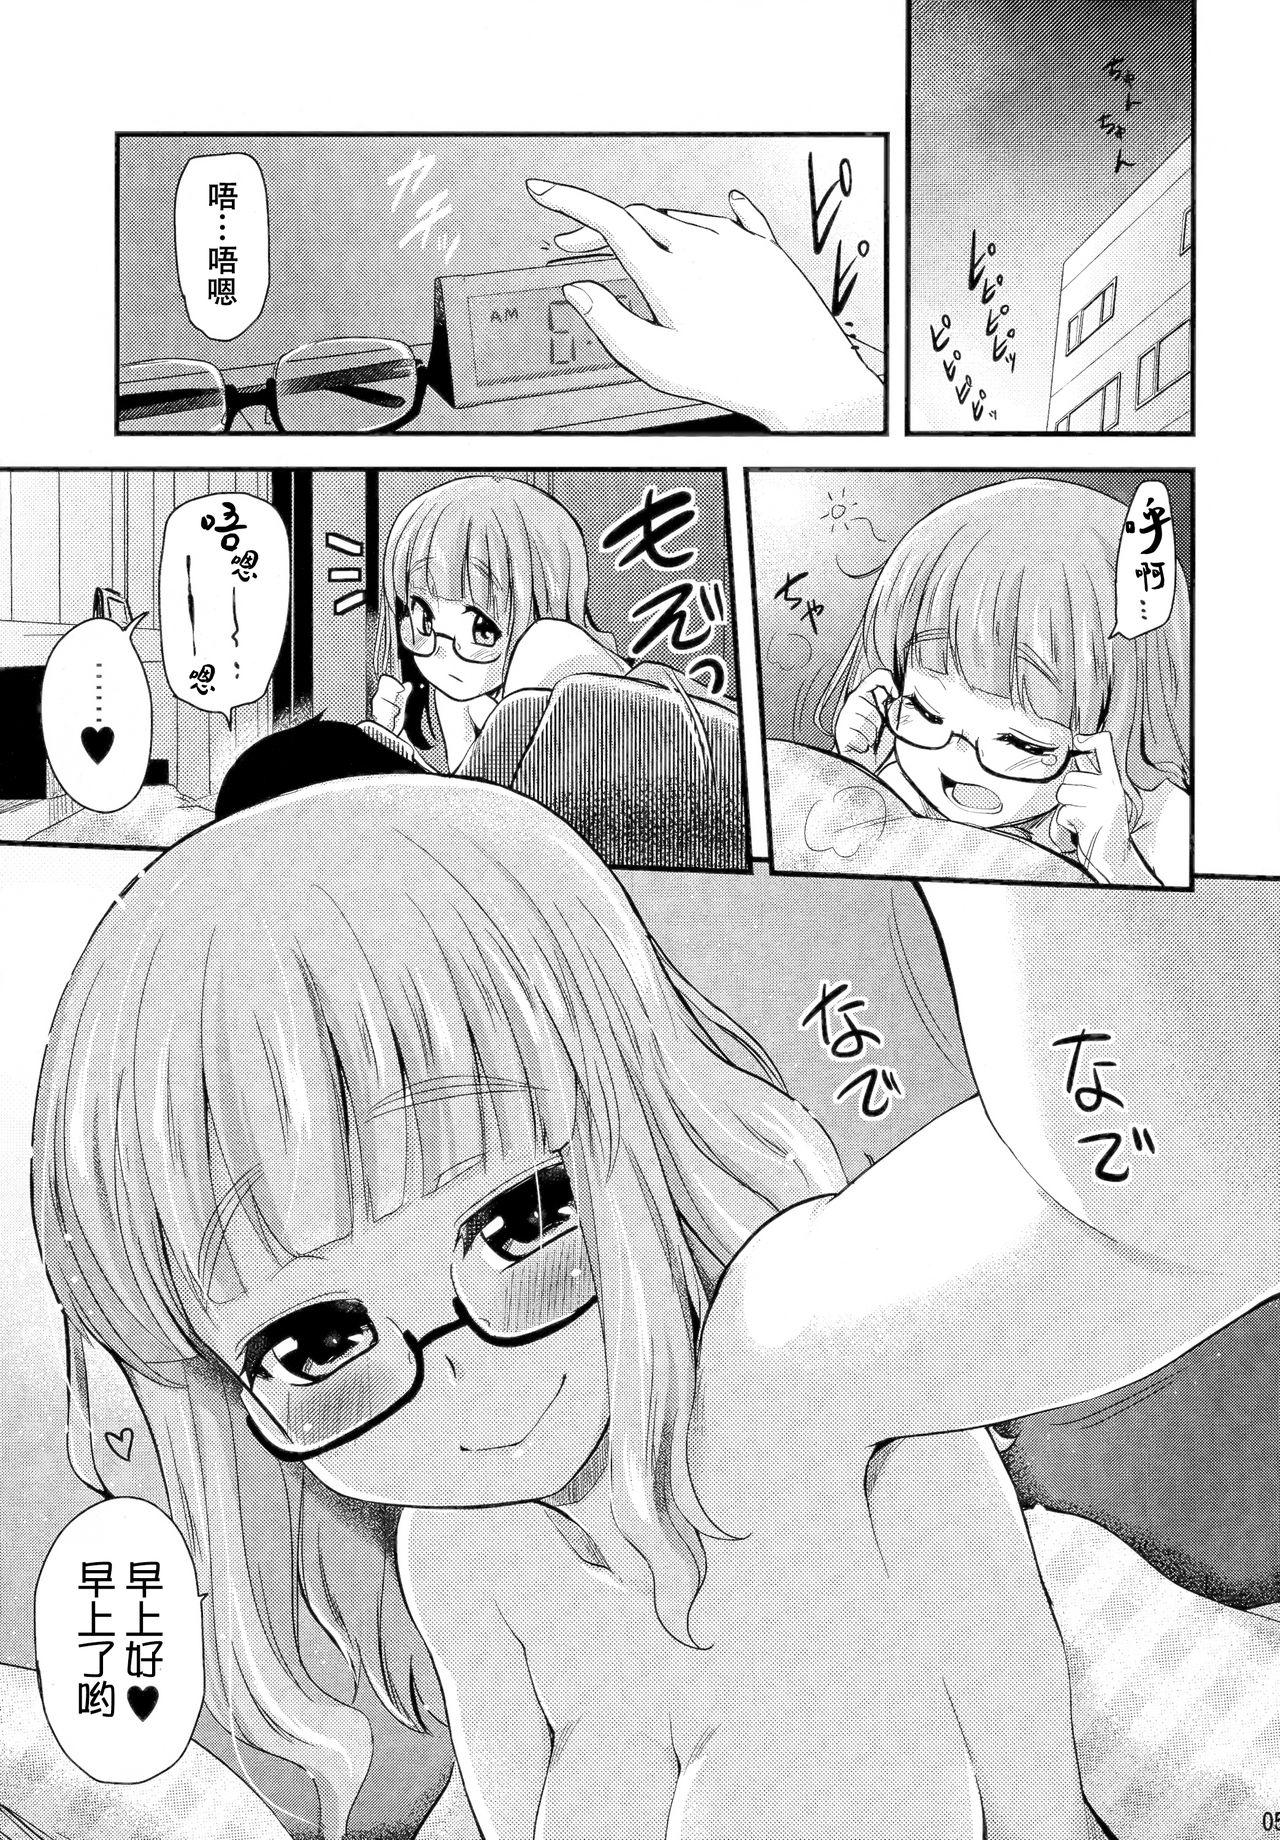 Alone Takebe Saori-chan toiu Kanojo ga "Ohayo" to Itte Kureru Hanashi. - Girls und panzer Adolescente - Page 5